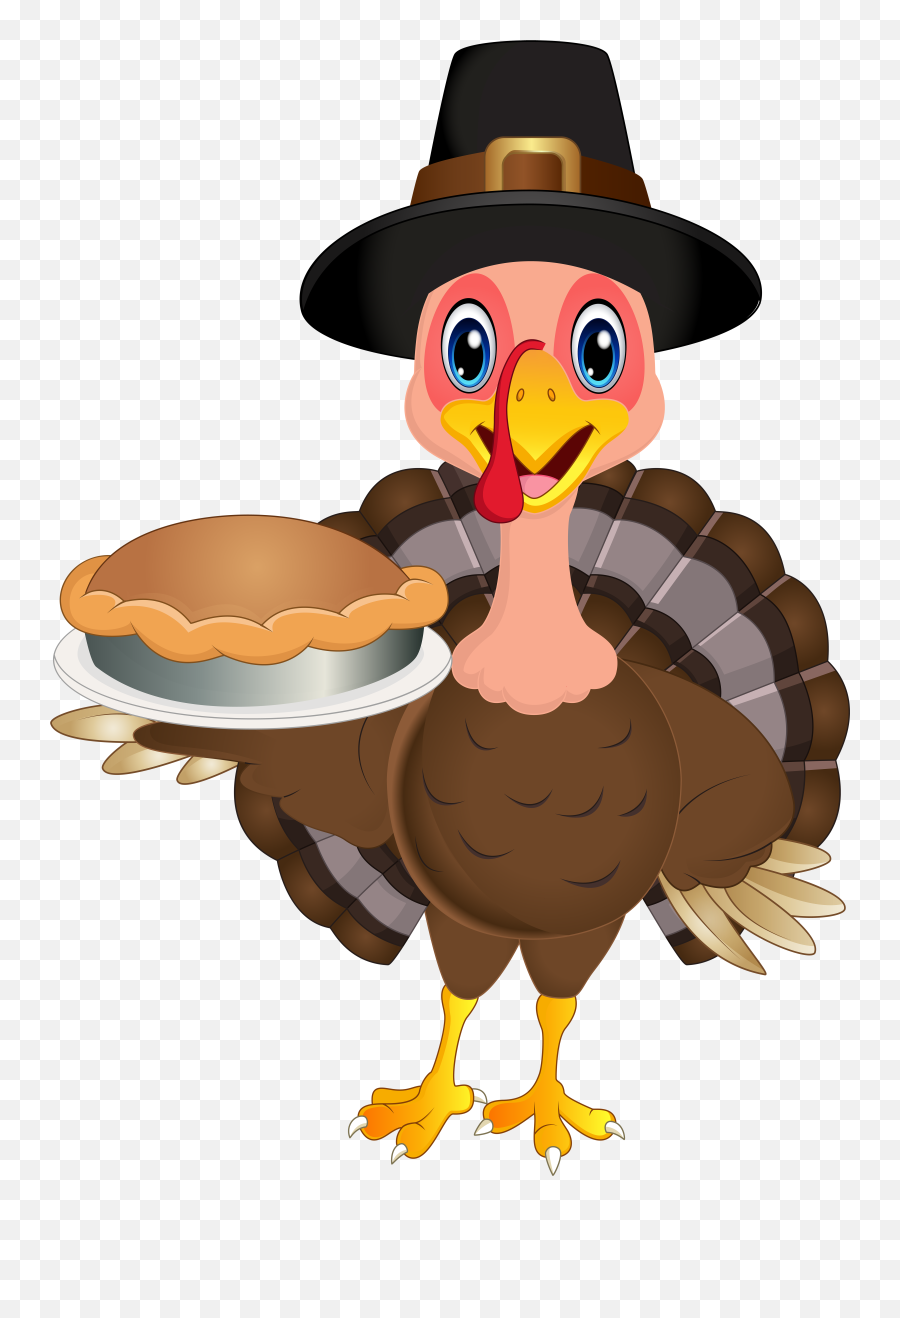 Thanksgiving Turkey Art Wallpapers - Wallpaper Cave Cute Thanksgiving Turkey Clipart Emoji,Thanksgiving Emojis